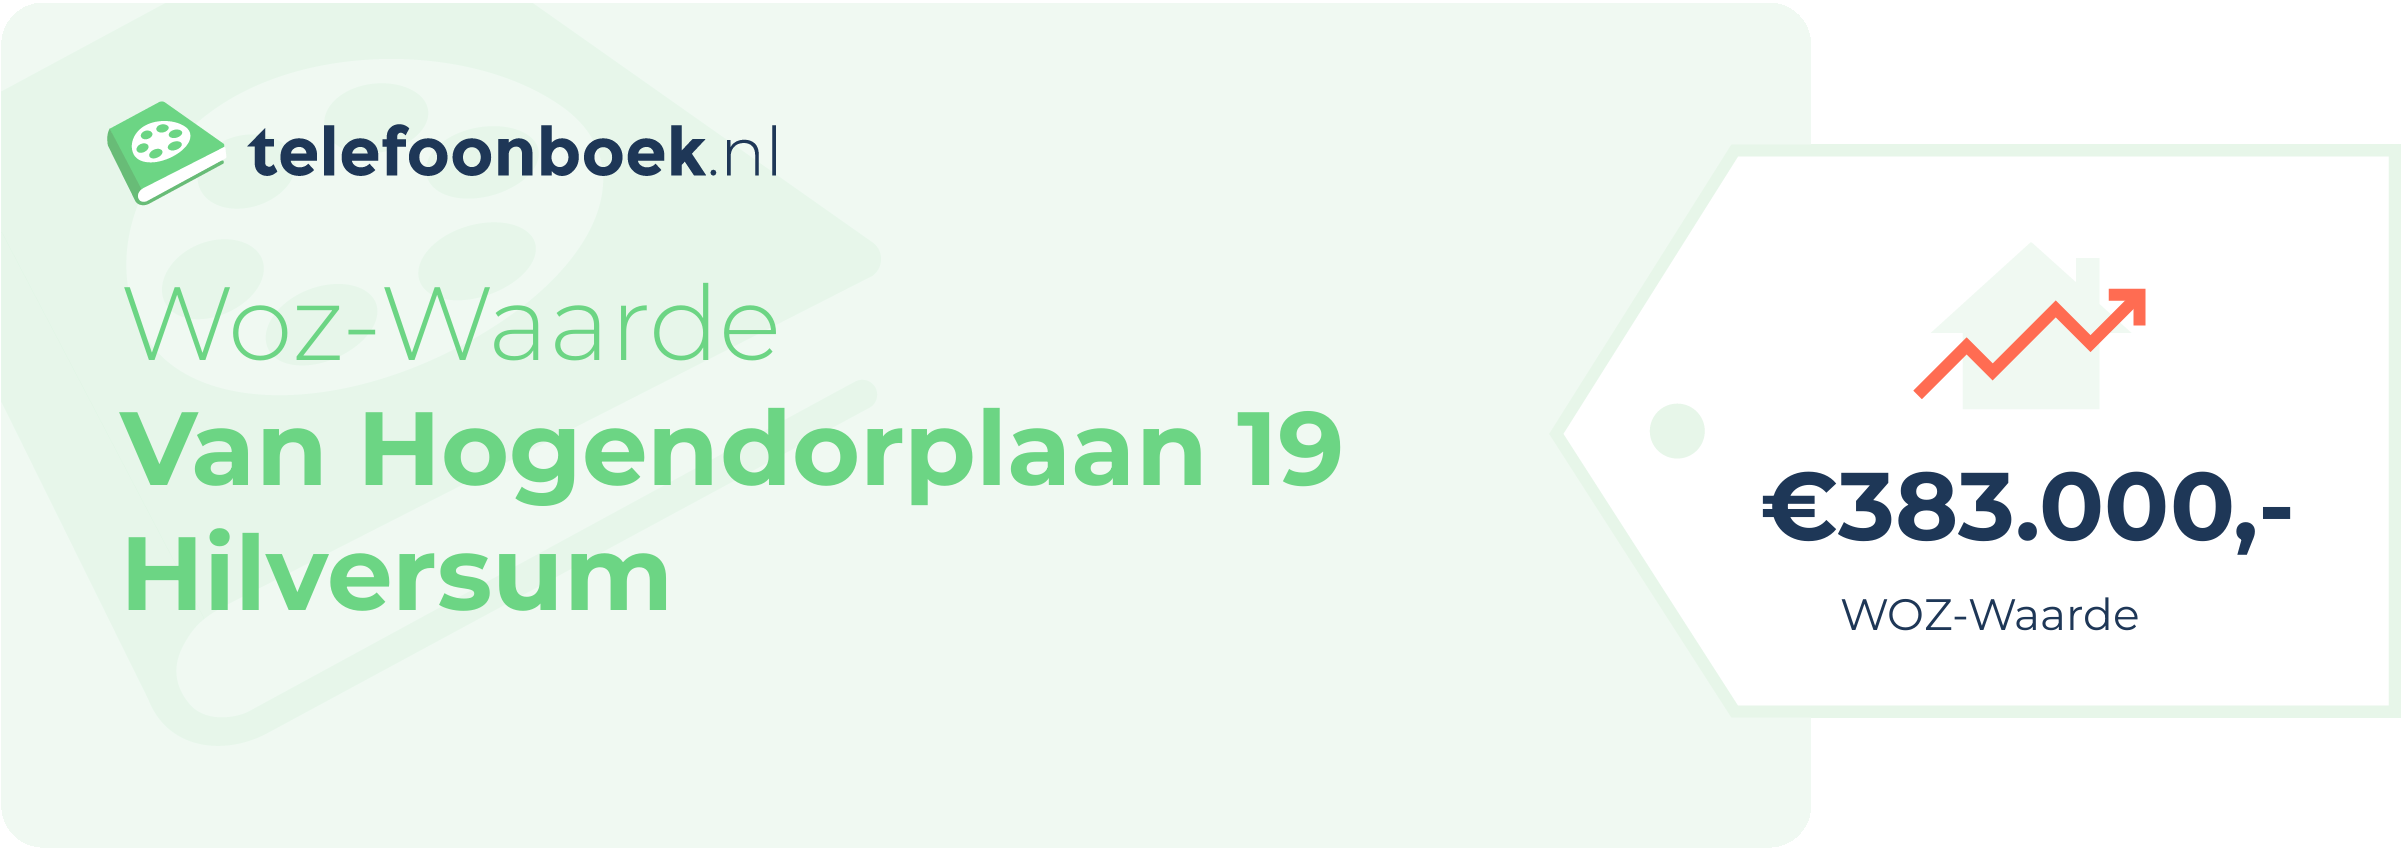 WOZ-waarde Van Hogendorplaan 19 Hilversum